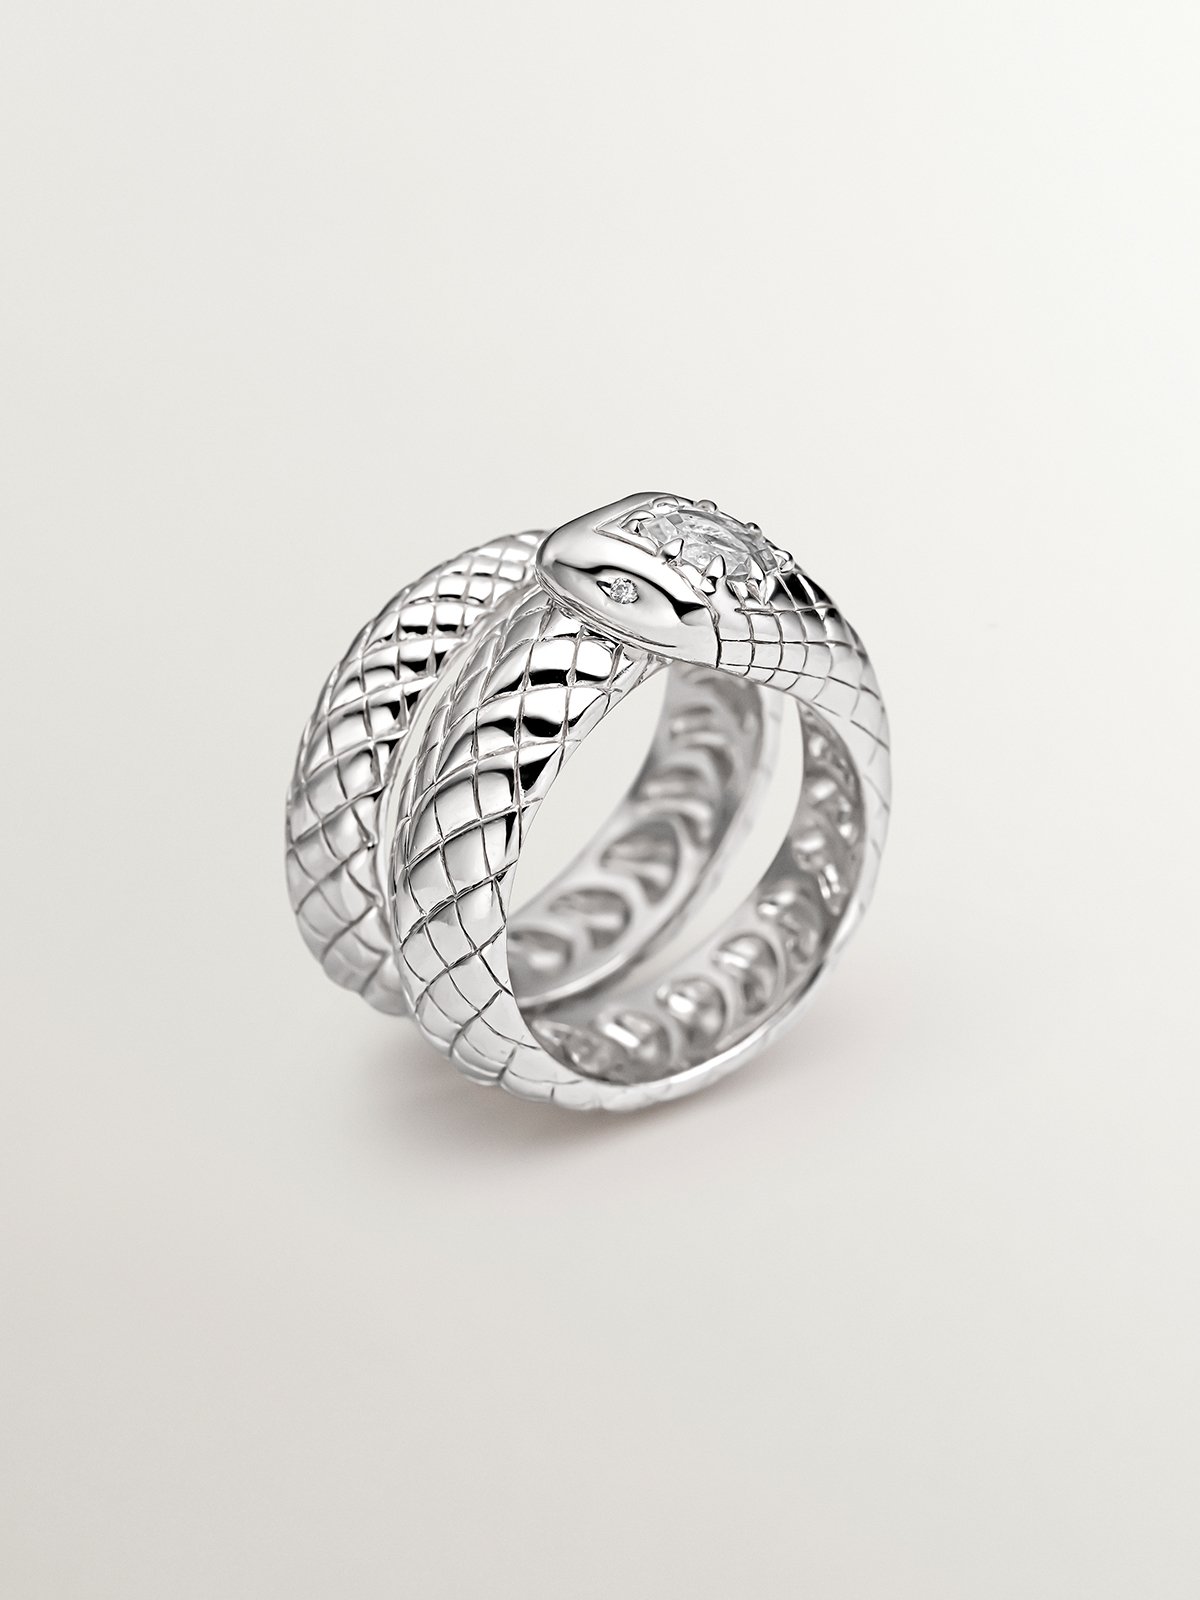 Anillo ancho de plata 925 con forma de serpiente y topacio y zafiros blancos